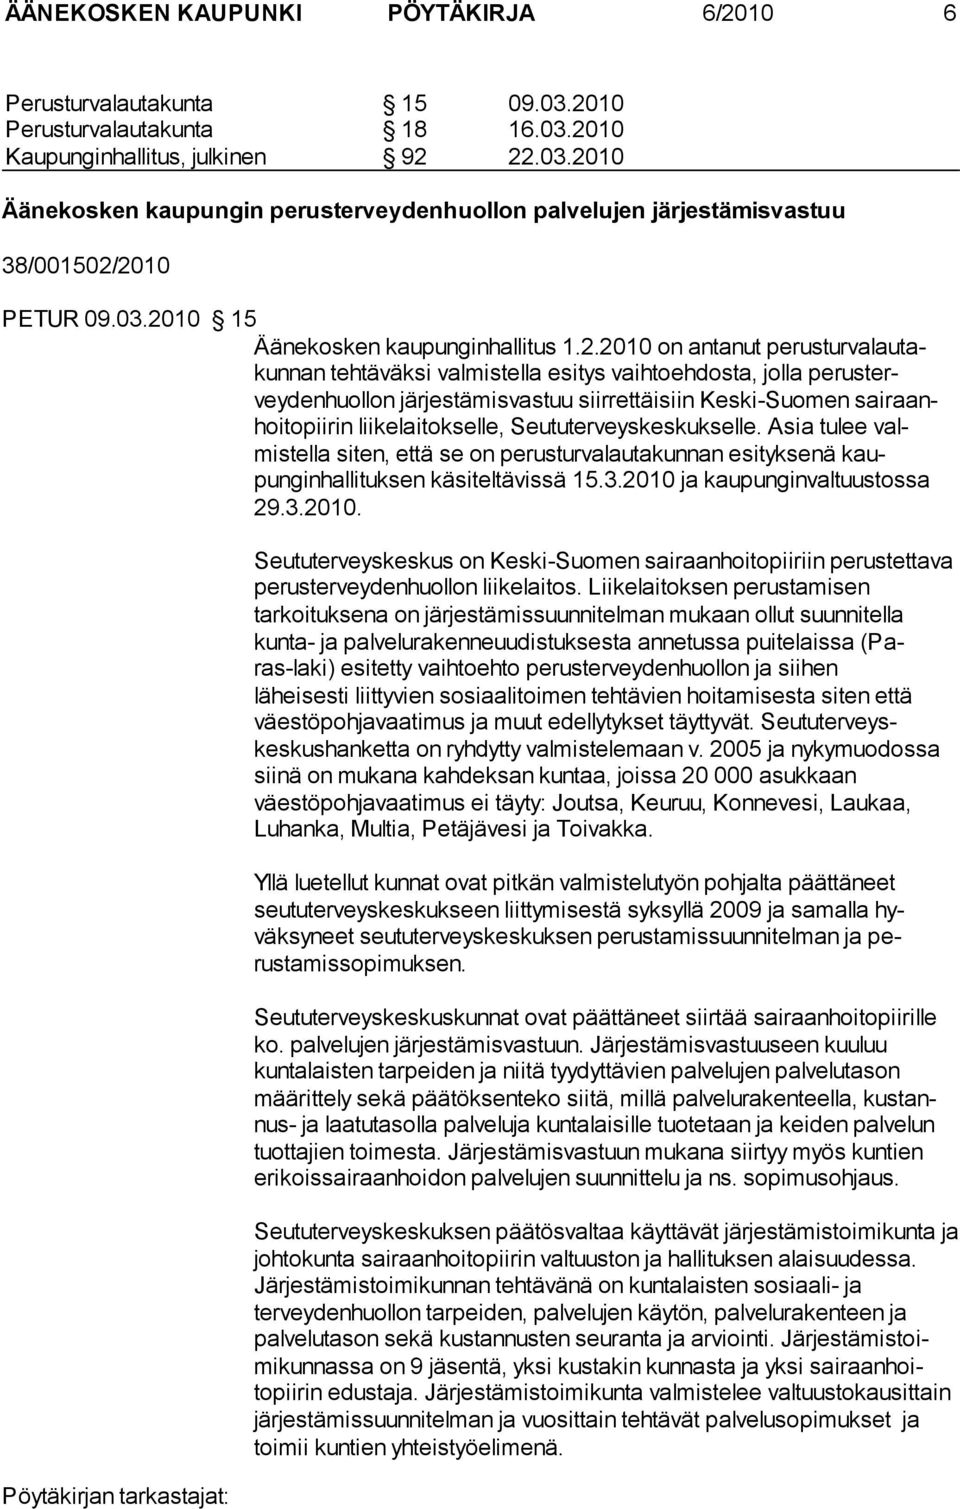 Keski-Suomen sairaanhoitopiirin liikelaitokselle, Seututerveyskeskukselle. Asia tulee valmistella siten, että se on perusturvalautakunnan esityksenä kaupunginhallituksen käsiteltävissä 15.3.